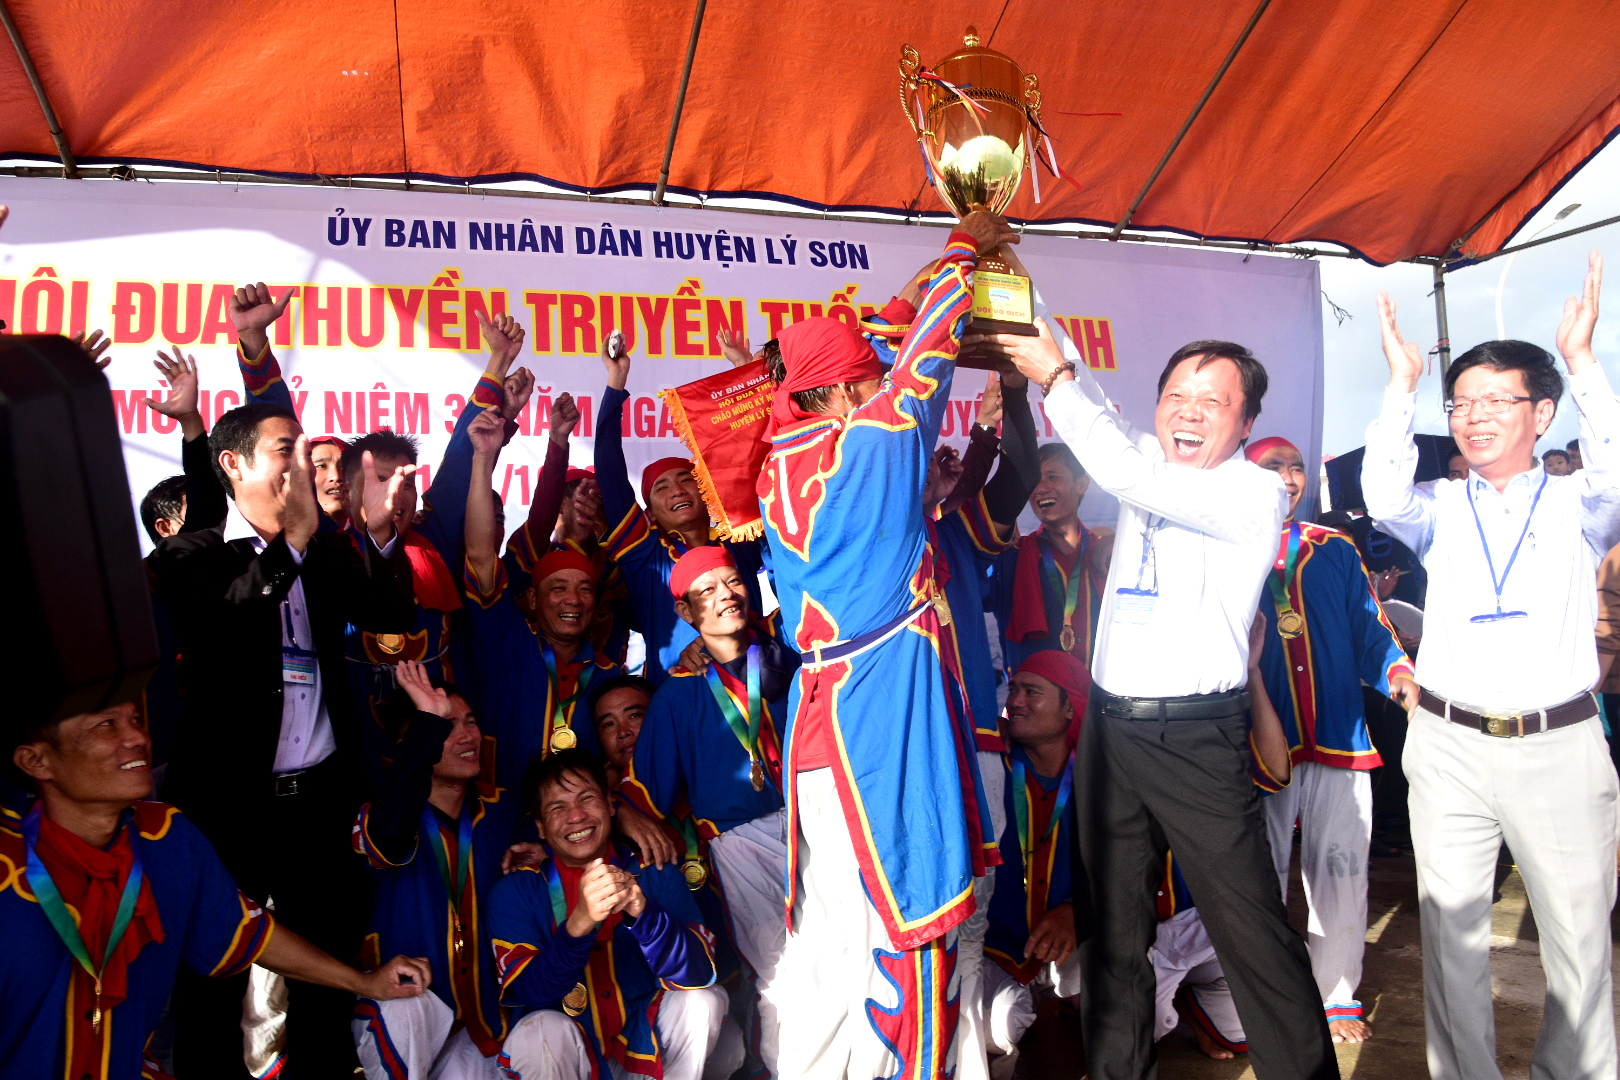 Lý Sơn tổ chức Hội đua thuyền truyền thống Tứ linh Chào mừng kỷ niệm 30 năm Ngày thành lập huyện